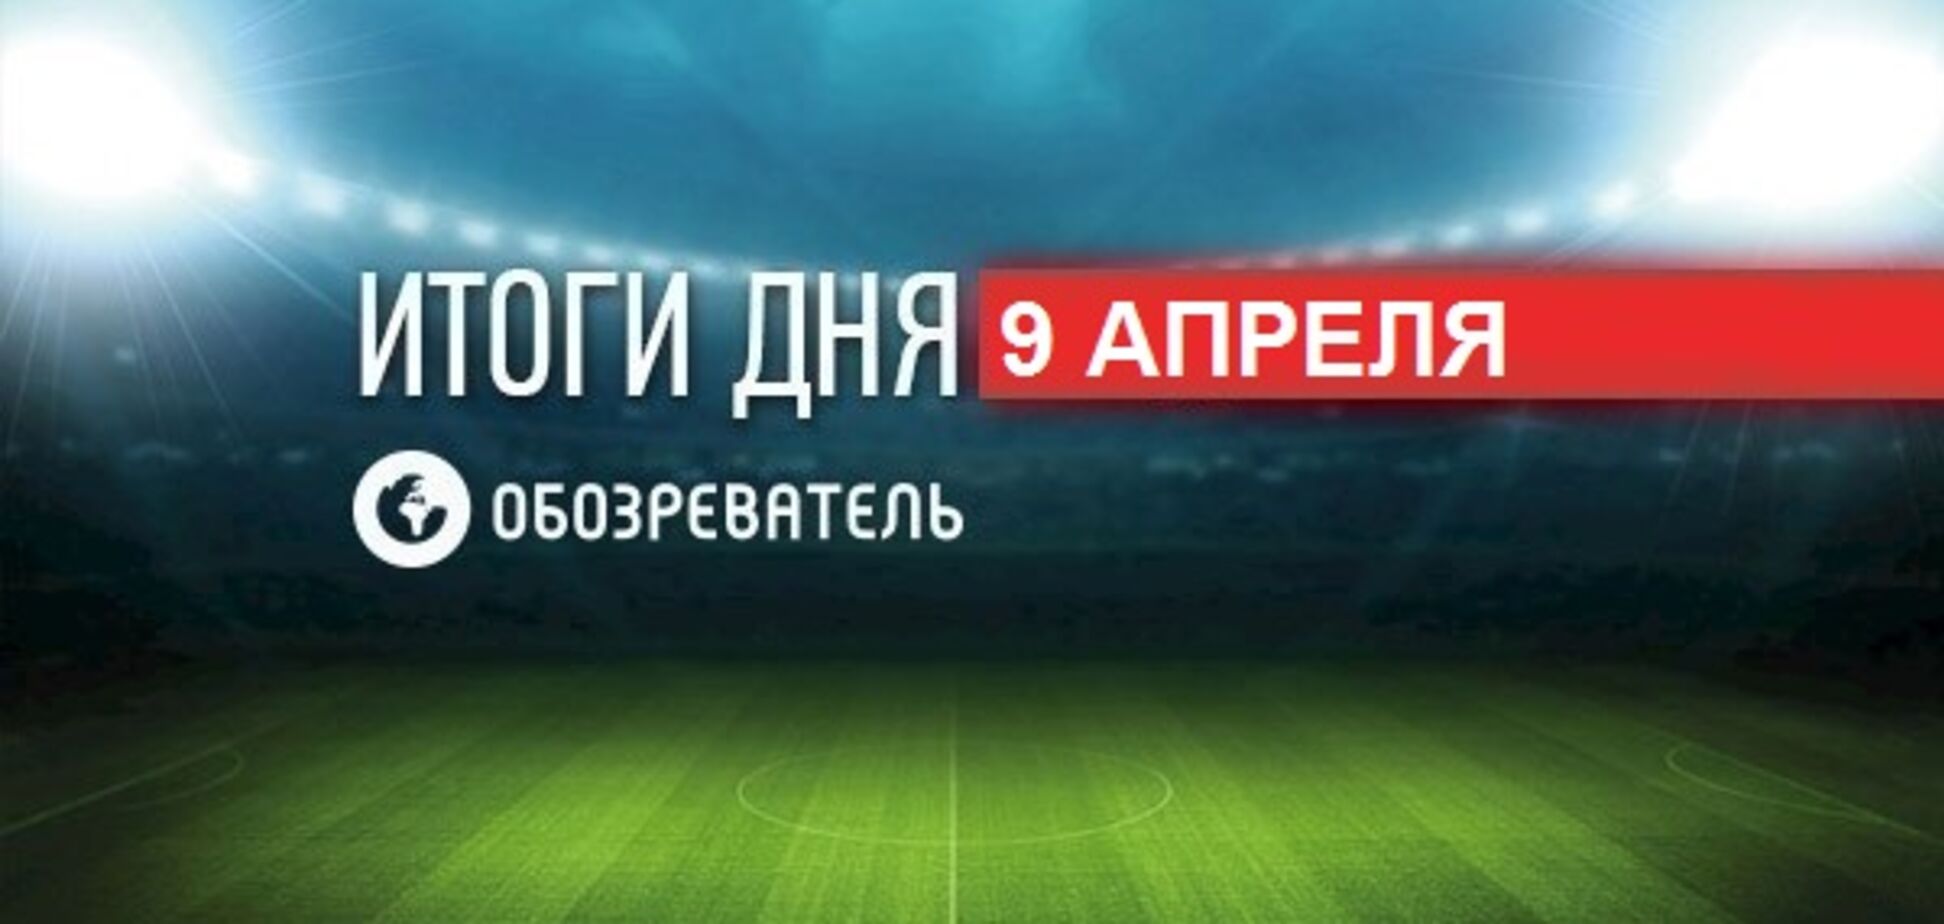 Легенда збірної Росії заціпенів після матчу з Україною: спортивні підсумки 9 квітня